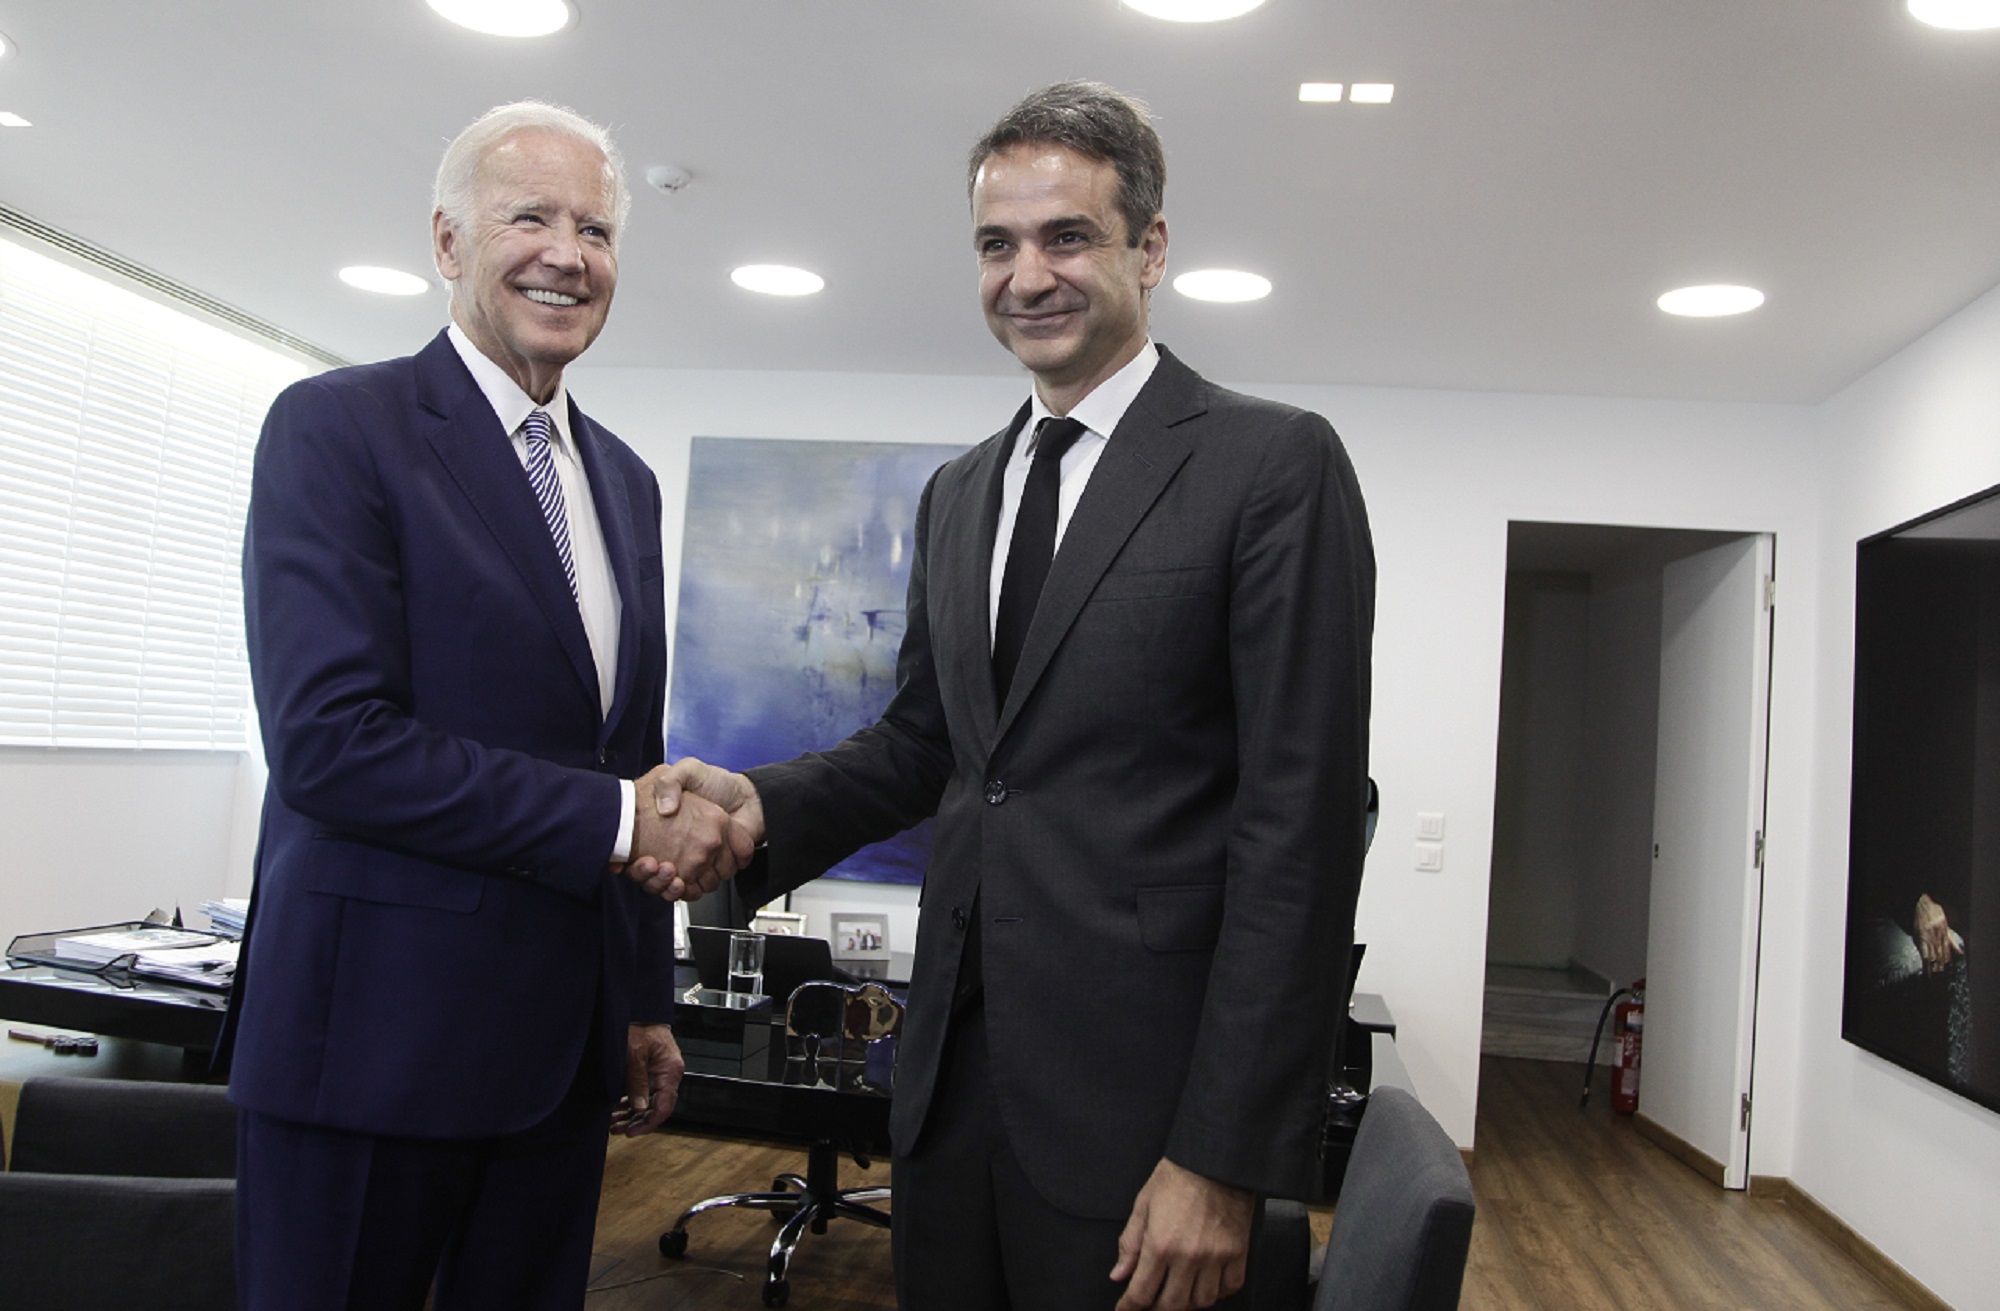 Ελλάδα και ΗΠΑ, στρατηγικοί εταίροι για σταθερότητα στην Ανατολική Μεσόγειο